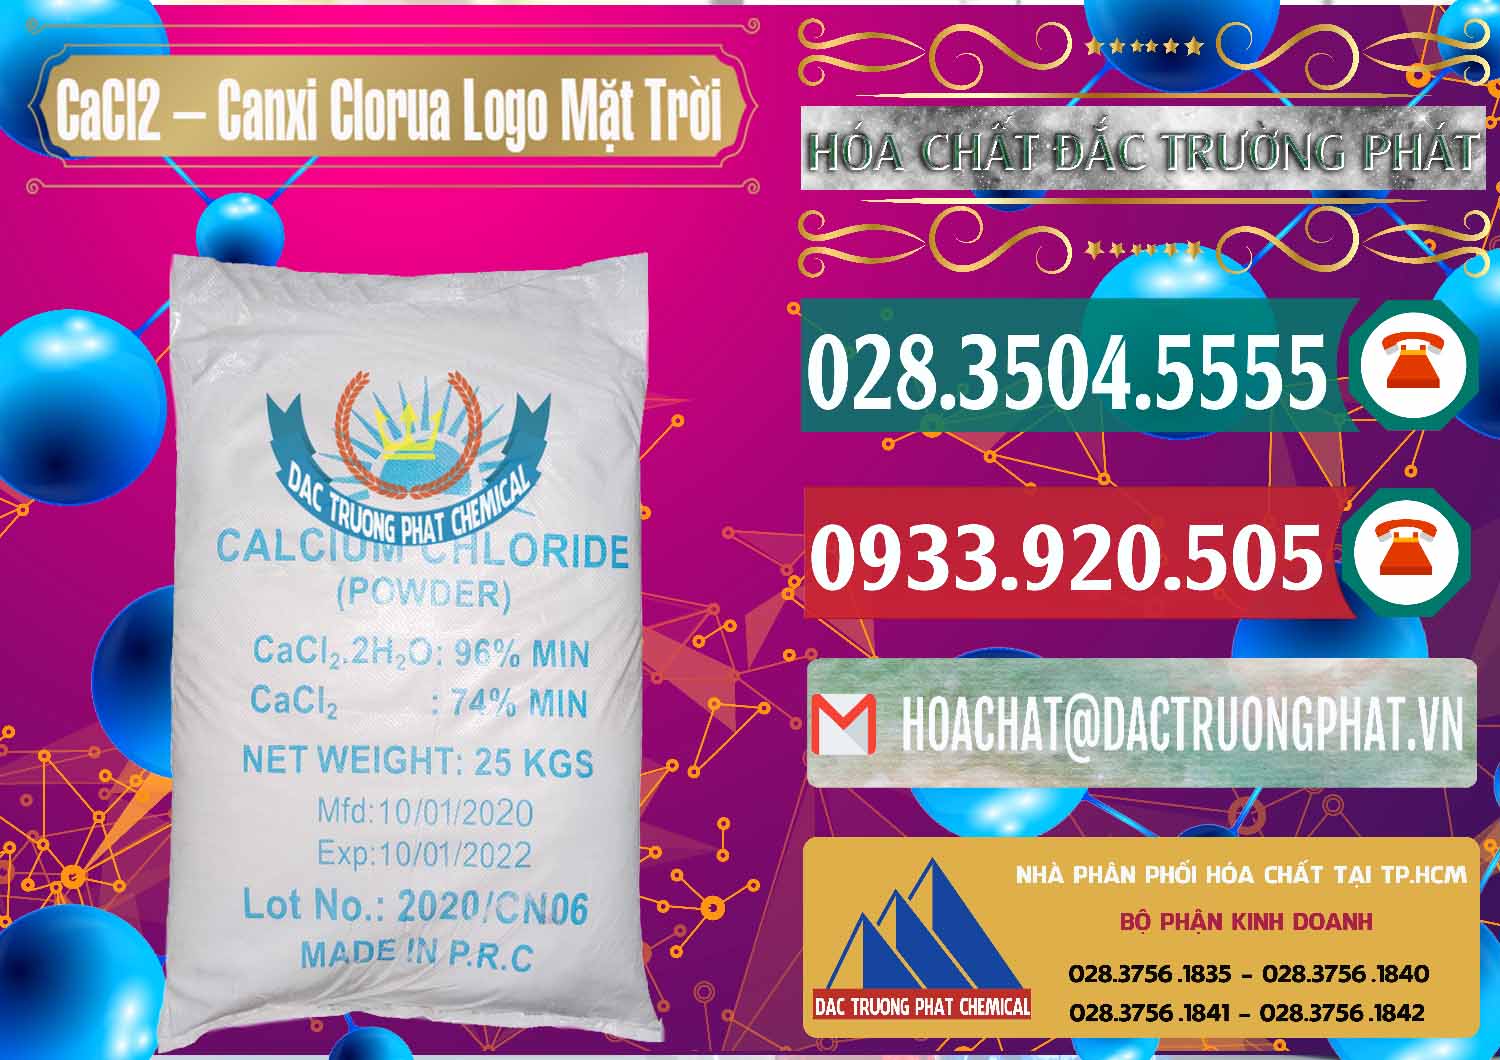 Nơi cung cấp & bán CaCl2 – Canxi Clorua 96% Logo Mặt Trời Trung Quốc China - 0041 - Nơi chuyên nhập khẩu _ cung cấp hóa chất tại TP.HCM - muabanhoachat.vn